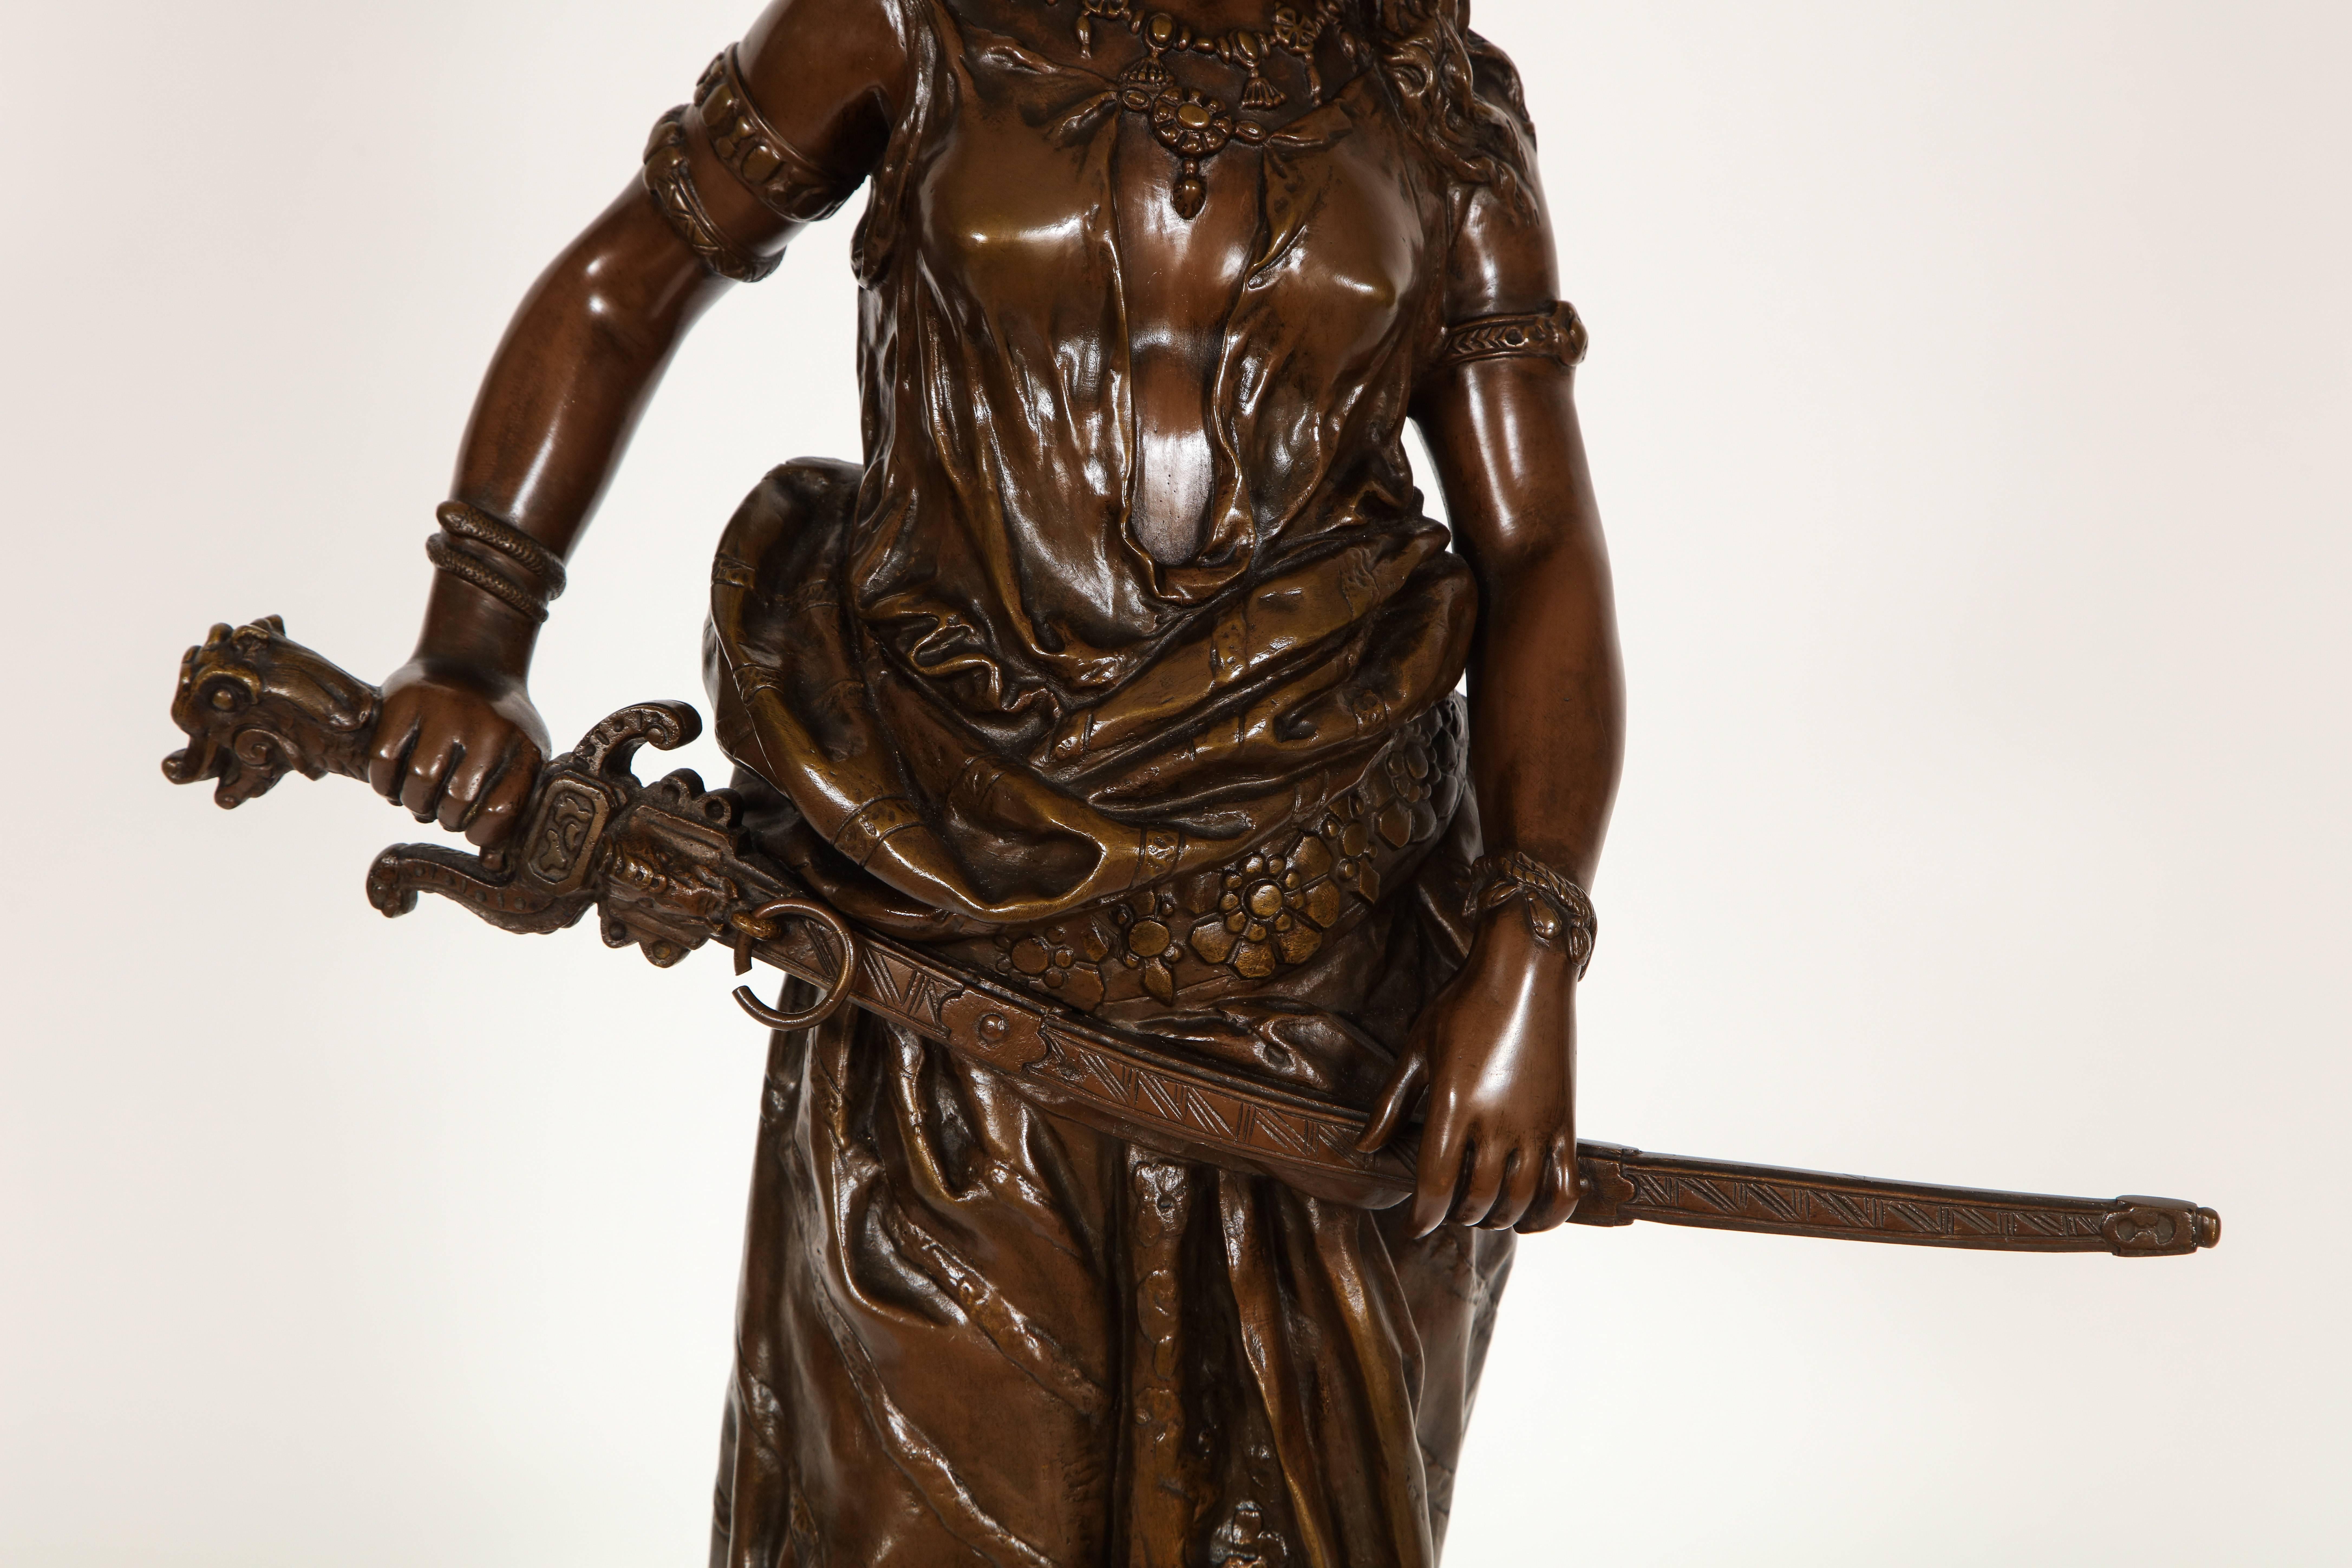 Patiné Grande sculpture en bronze patiné de 